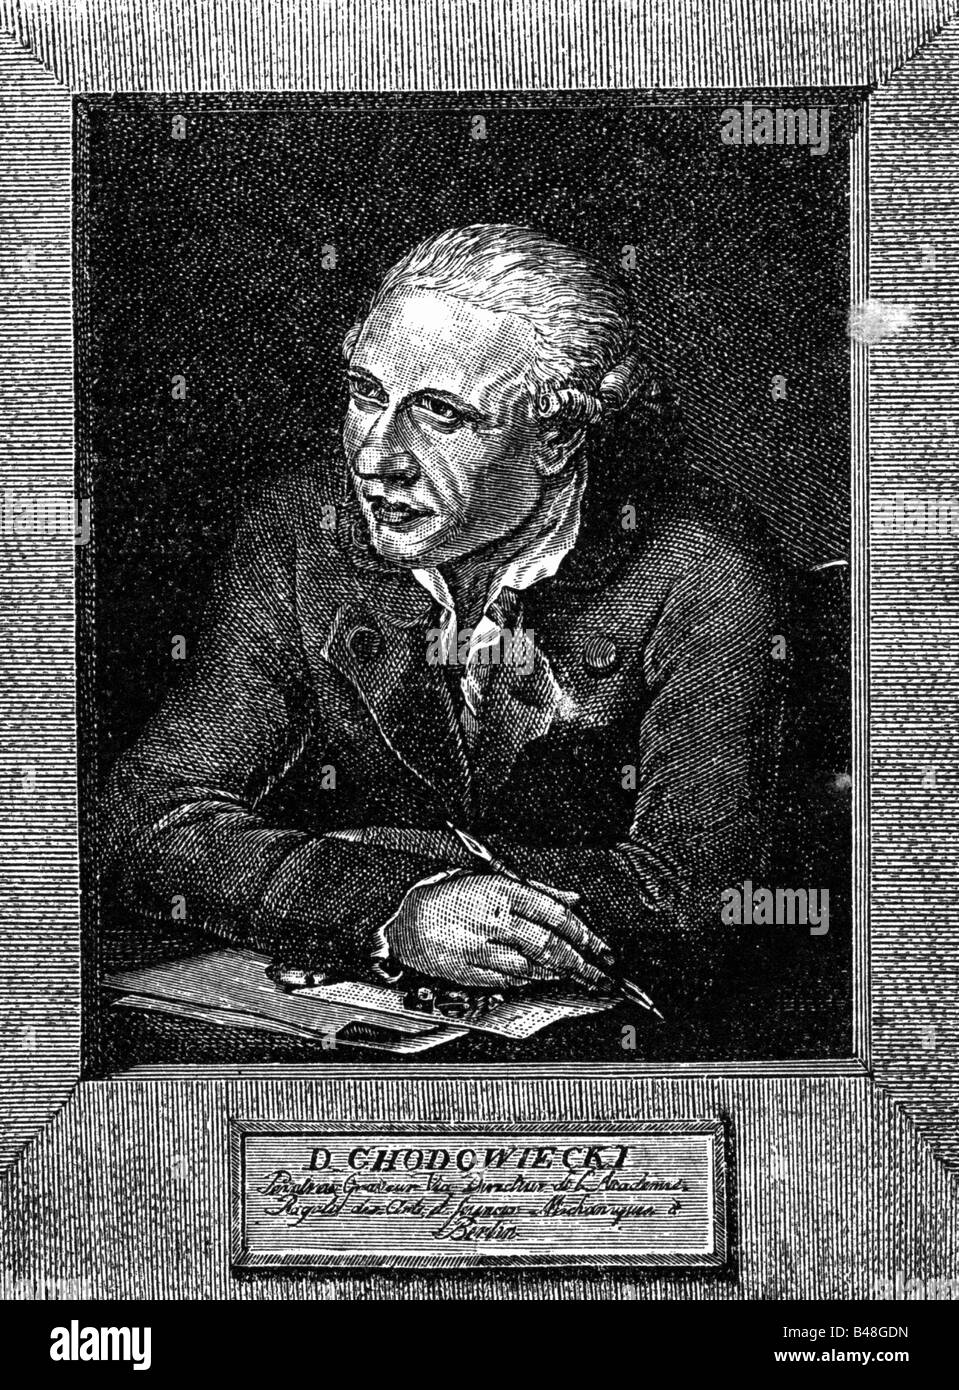 Chodowiecki, Daniel, 16.10.1726 - 7.2.1801, peintre et graveur allemand, portrait, gravure sur cuivre par Bennett Salomon, vers 1810, l'artiste a le droit d'auteur , de ne pas être effacé Banque D'Images